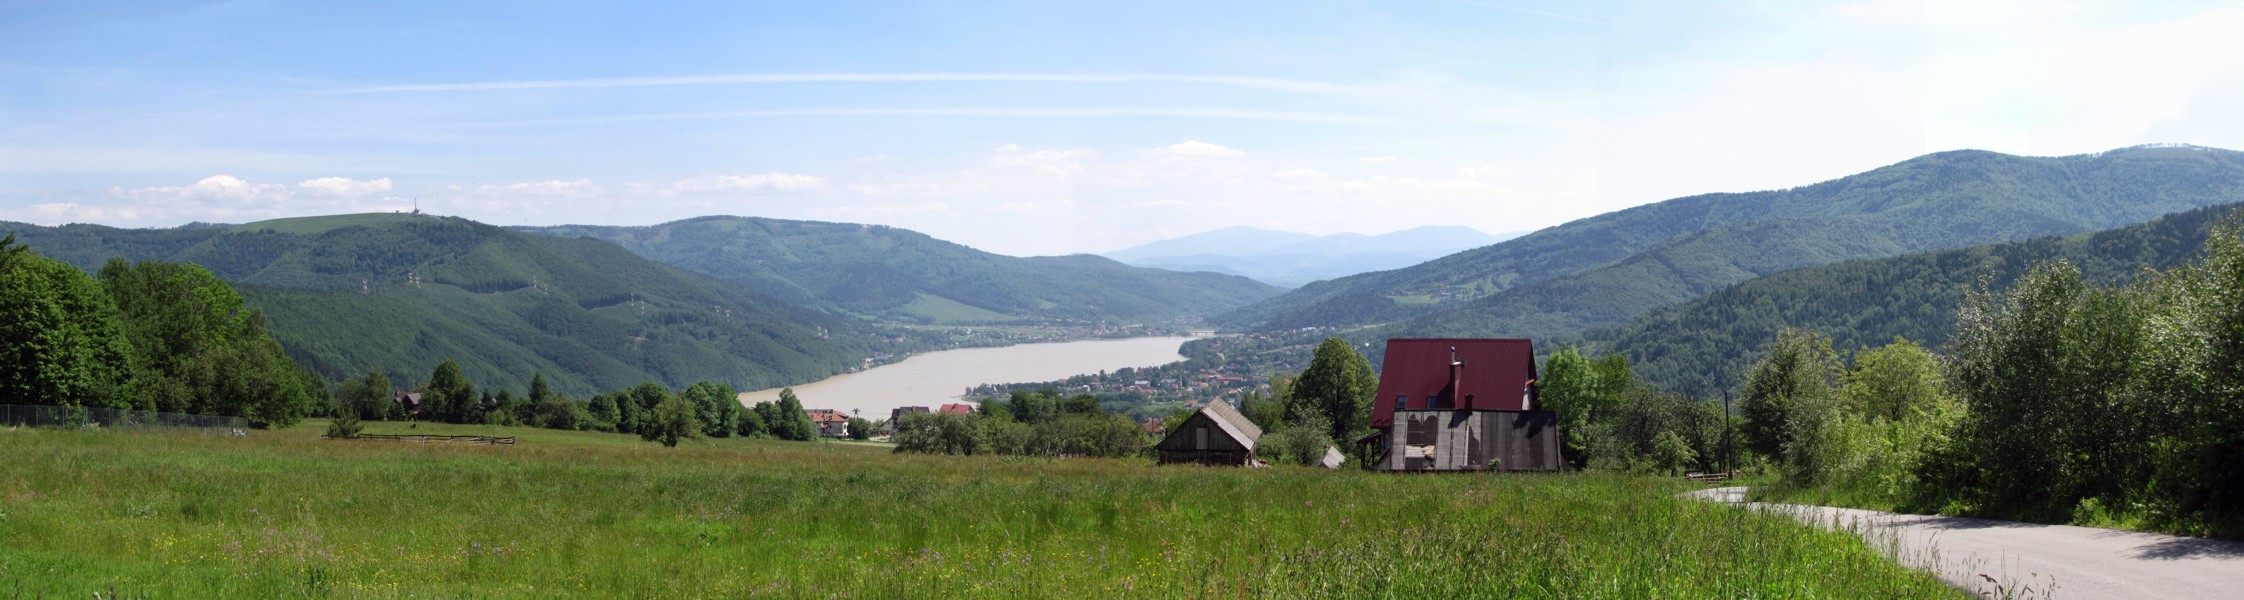 Widok z Chrobaczej Łąki na Jezioro Międzybrodzkie i górę Żar
[i]Photo by G.W.[/i]
Słowa kluczowe: panorama,góry,lato